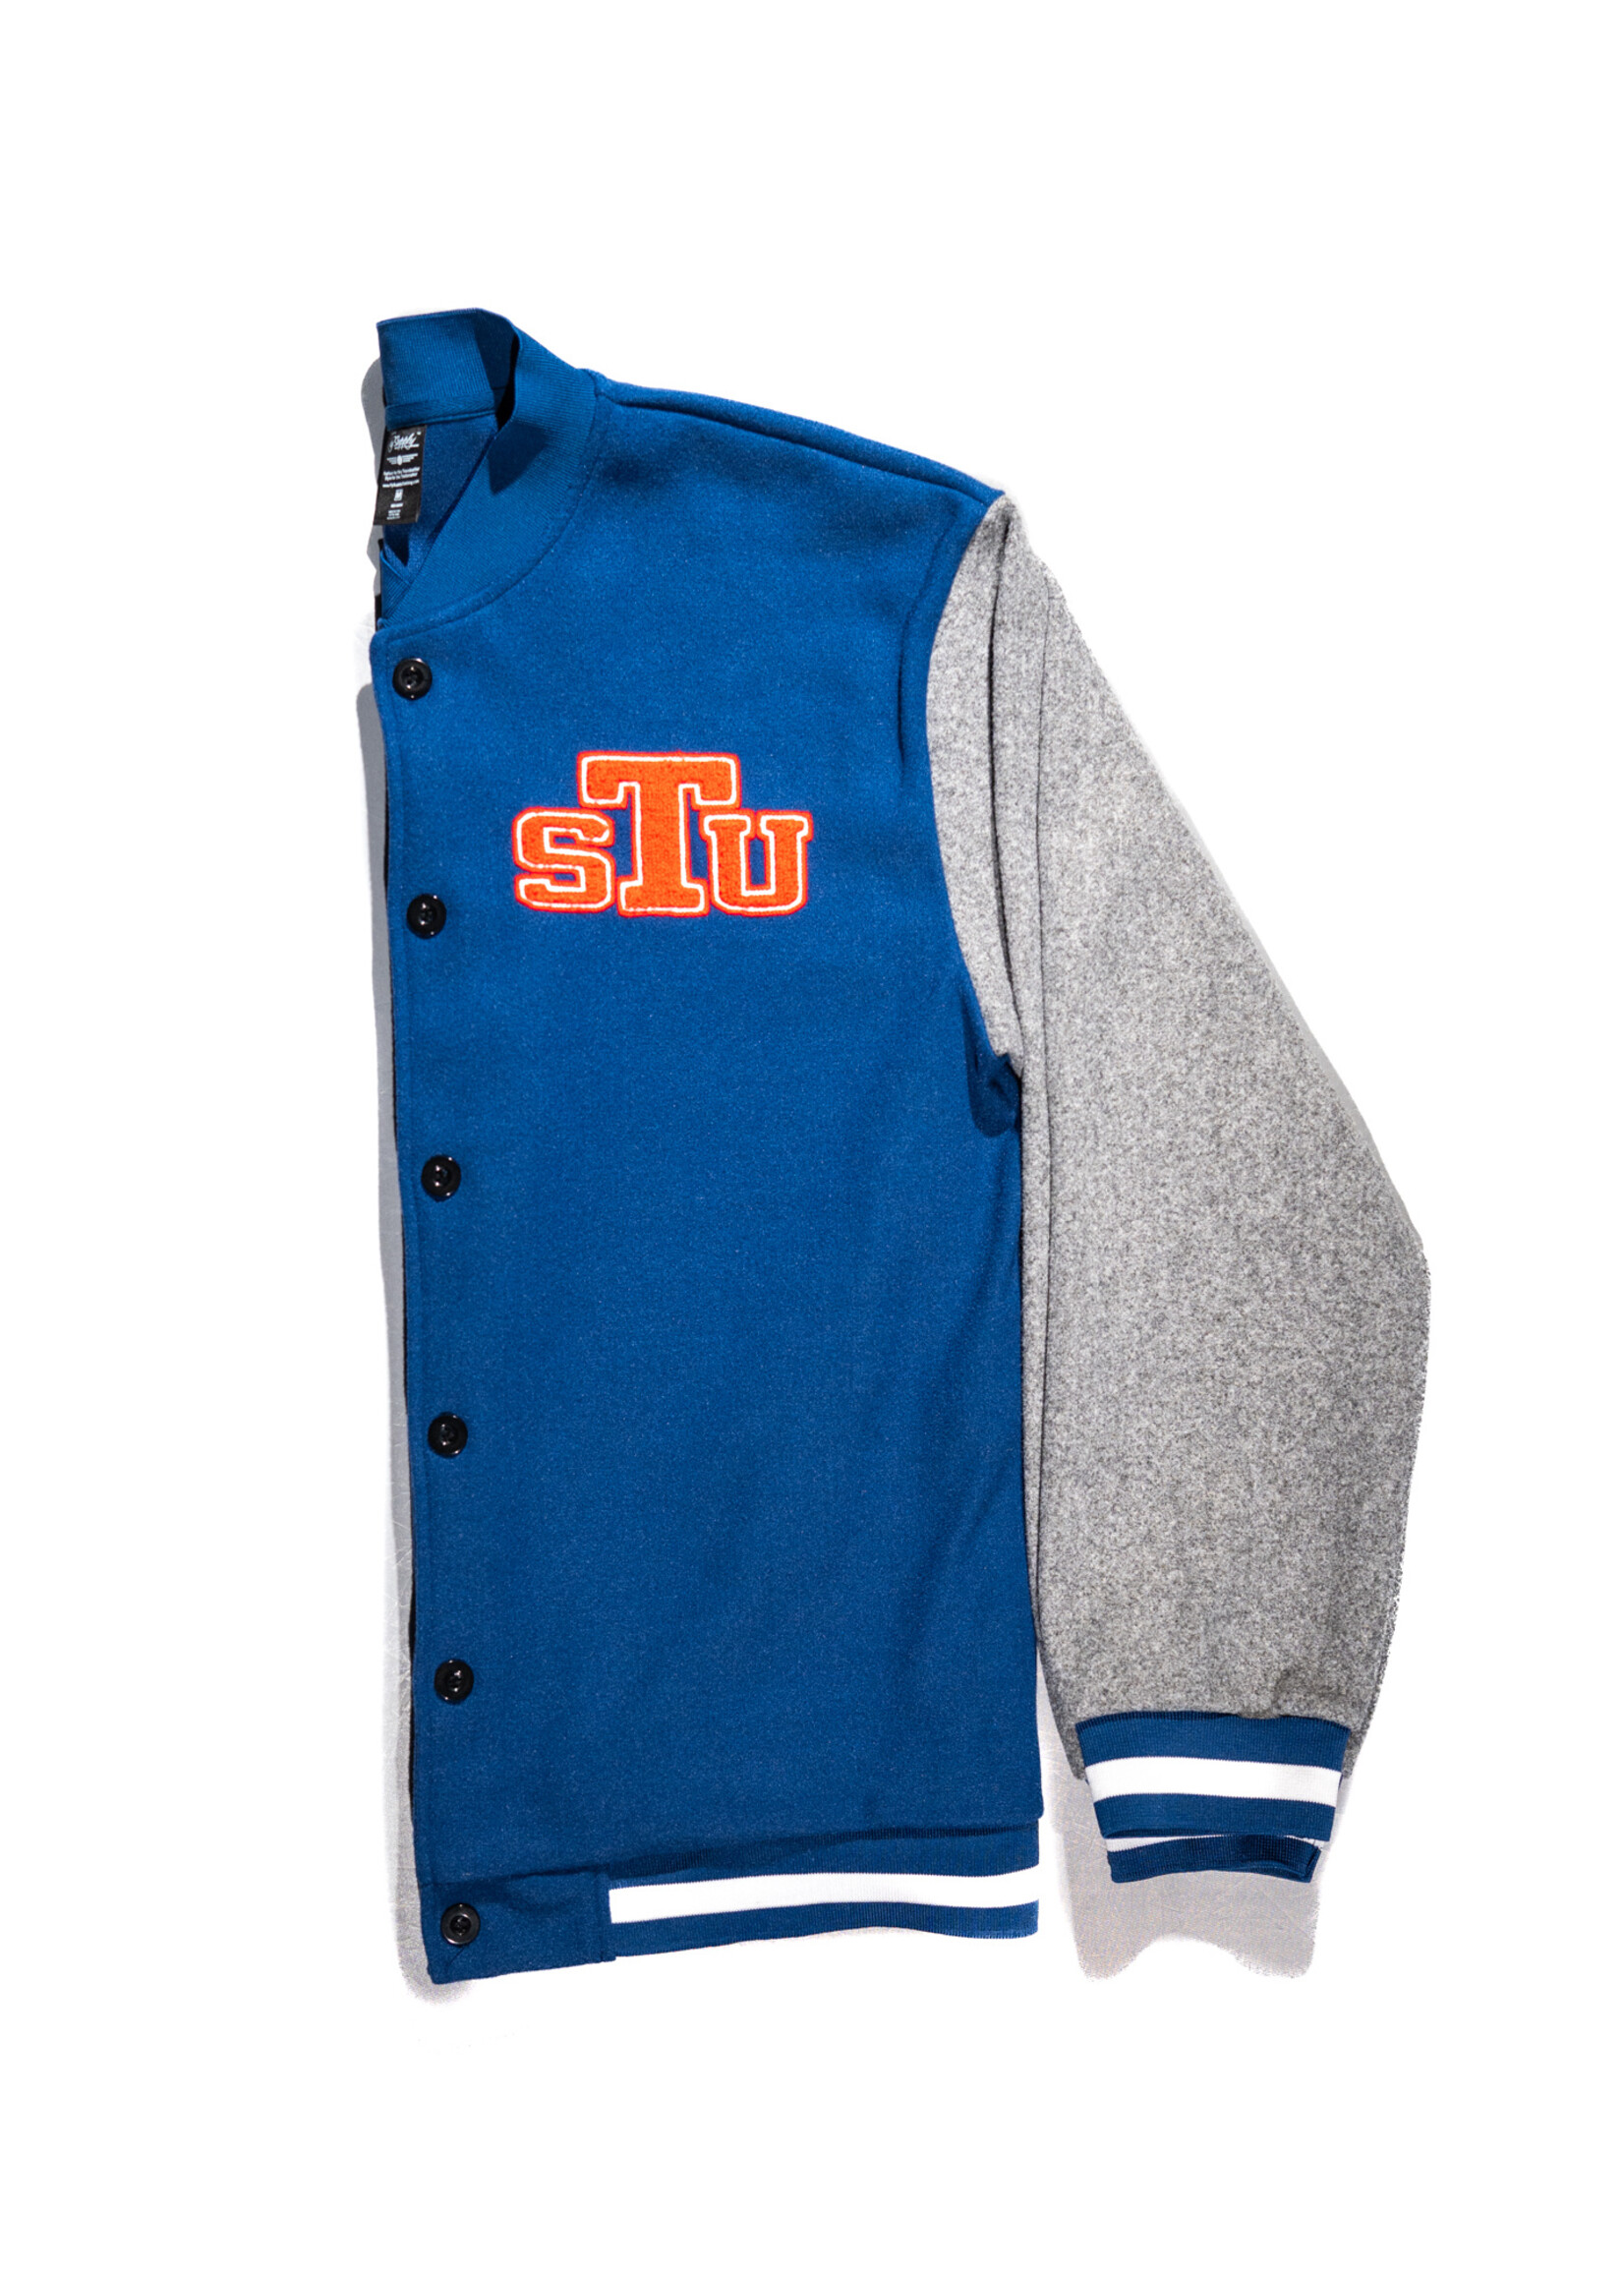 STU-FS Blue Letterman Jacket